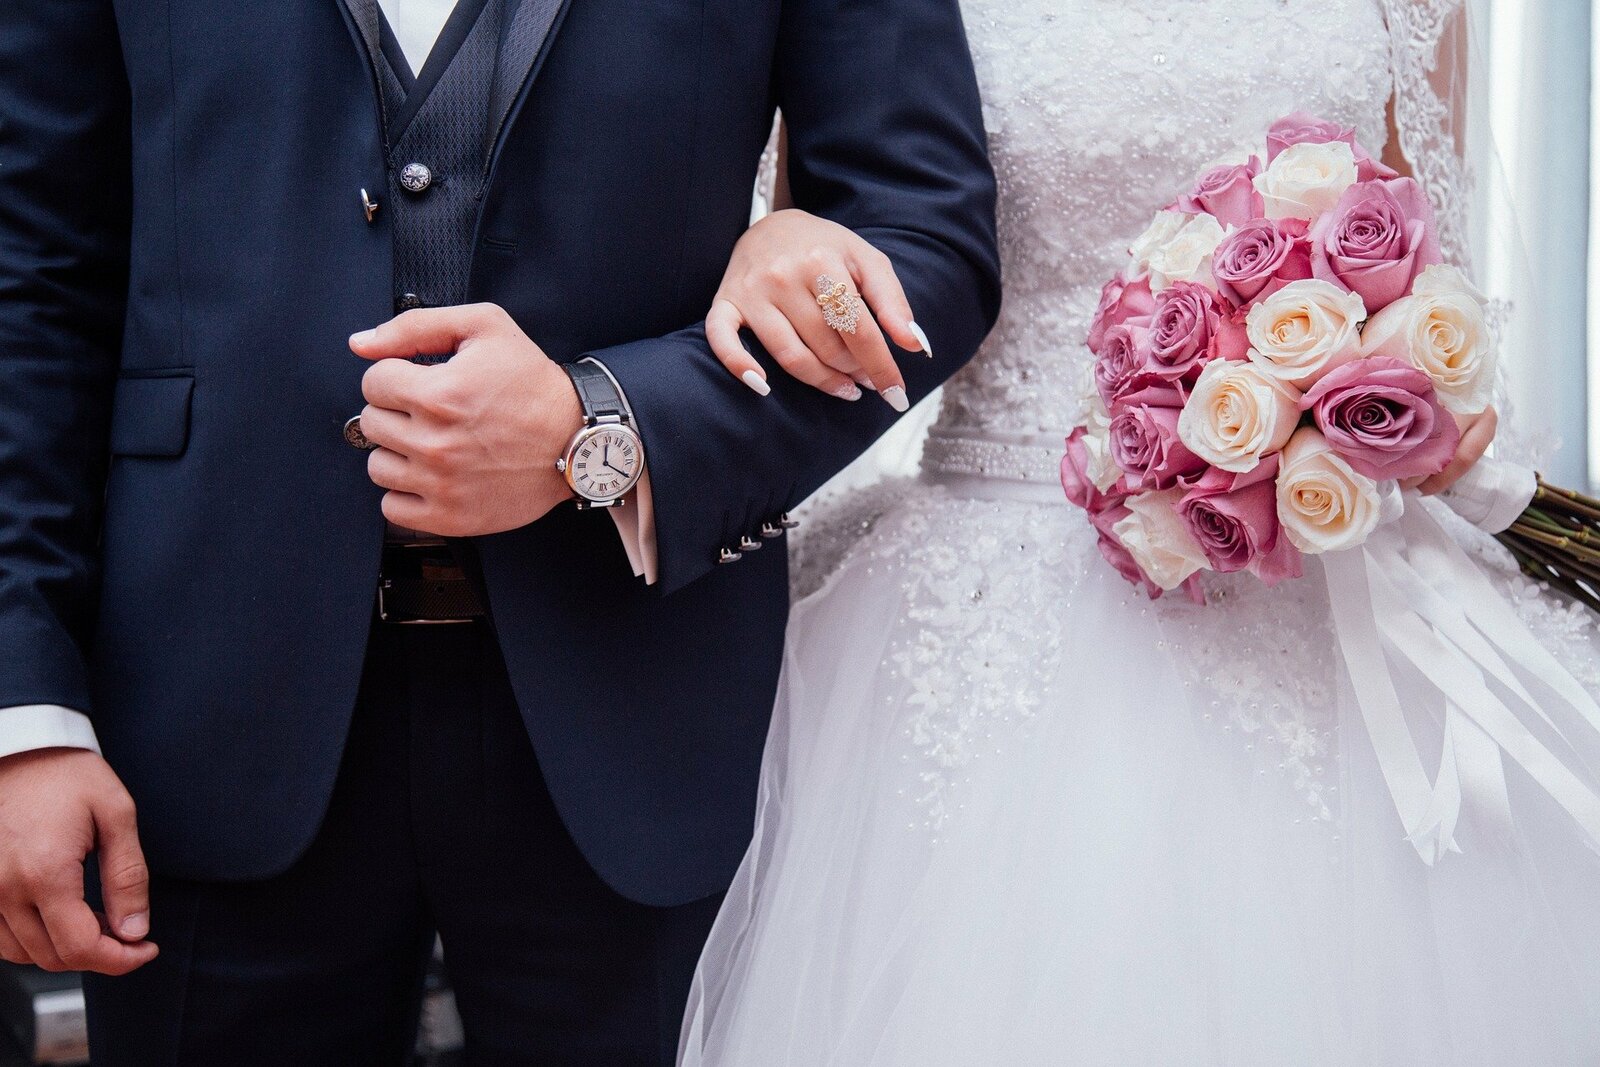 В последнюю красивую дату уходящего года в Башкирии свой брак зарегистрировали более 100 пар